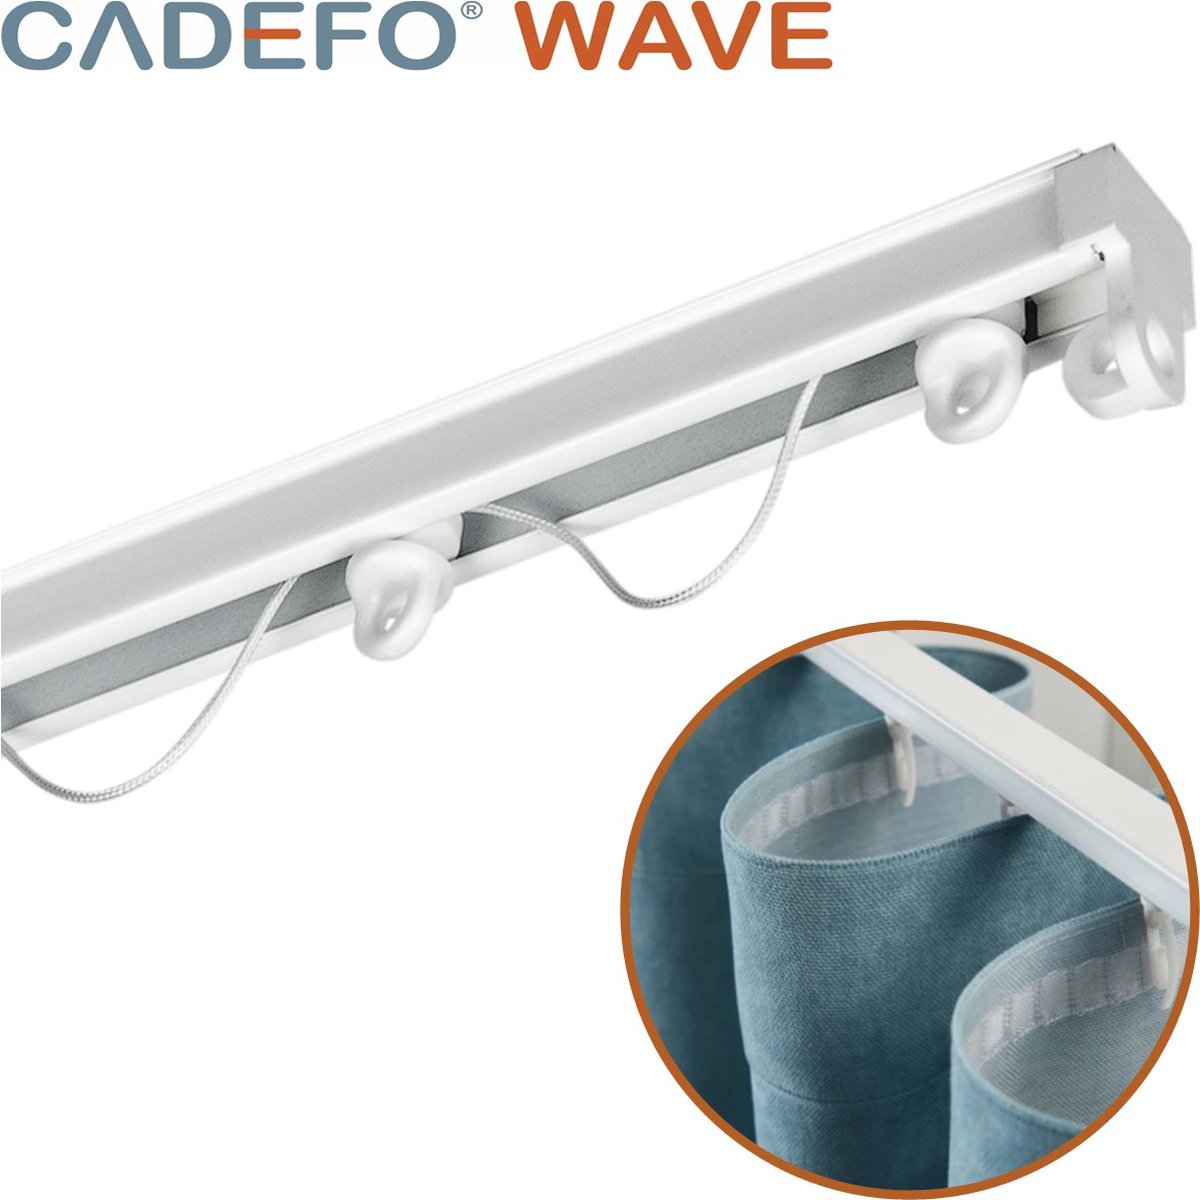 CADEFO WAVE (551 - 600 cm) Gordijnrails - Compleet op maat! - UIT 1 STUK - Leverbaar tot 6 meter - Plafondbevestiging - Lengte 568 cm